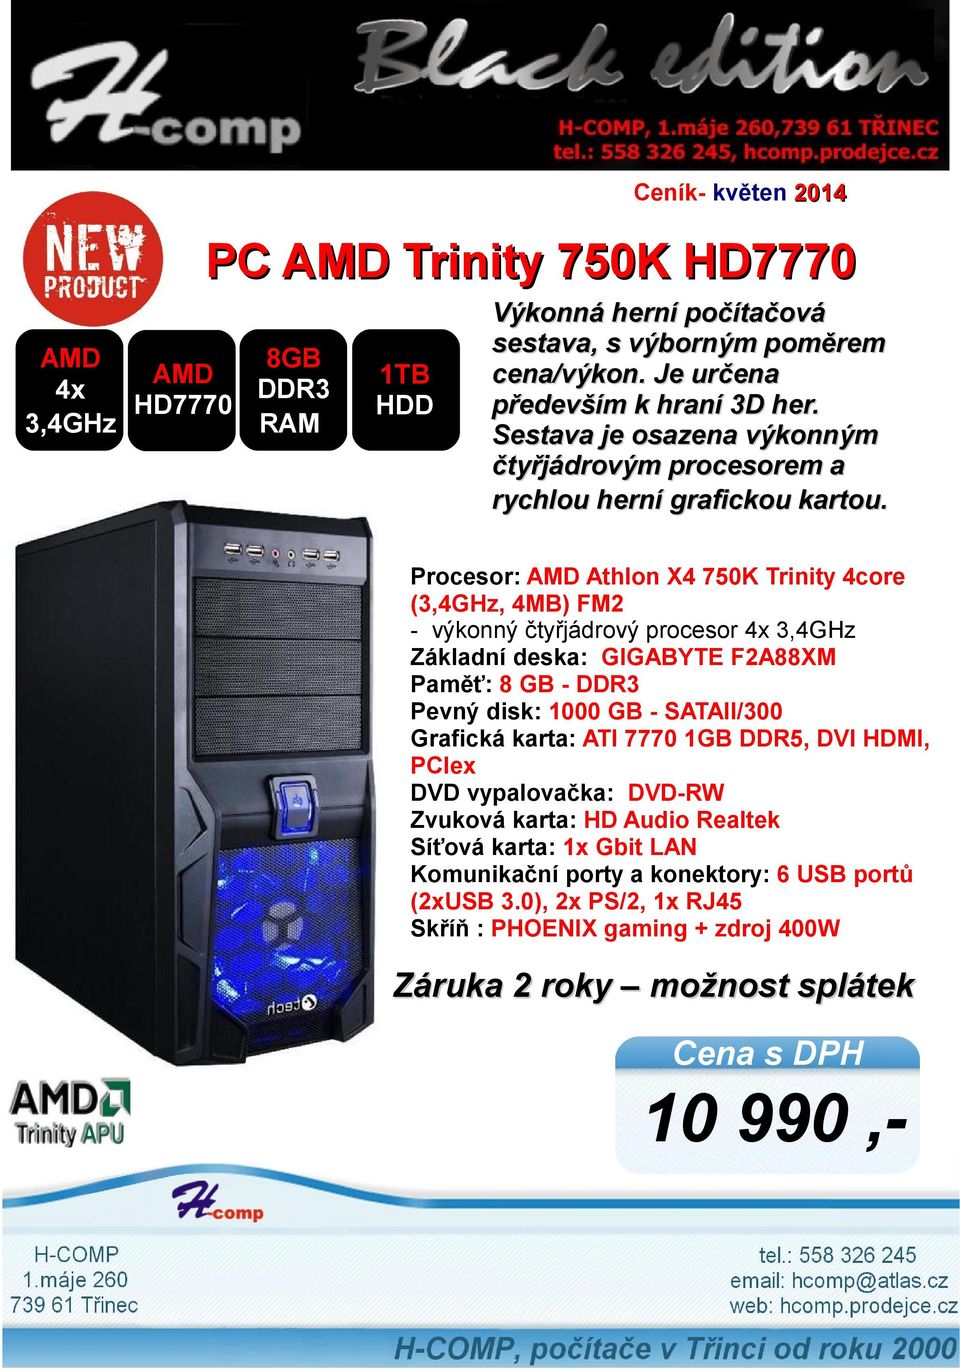 Procesor: AMD Athlon X4 750K Trinity 4core (3,4GHz, 4MB) FM2 - výkonný čtyřjádrový procesor 4x 3,4GHz Základní deska: GIGABYTE F2A88XM Paměť: 8 GB - Pevný